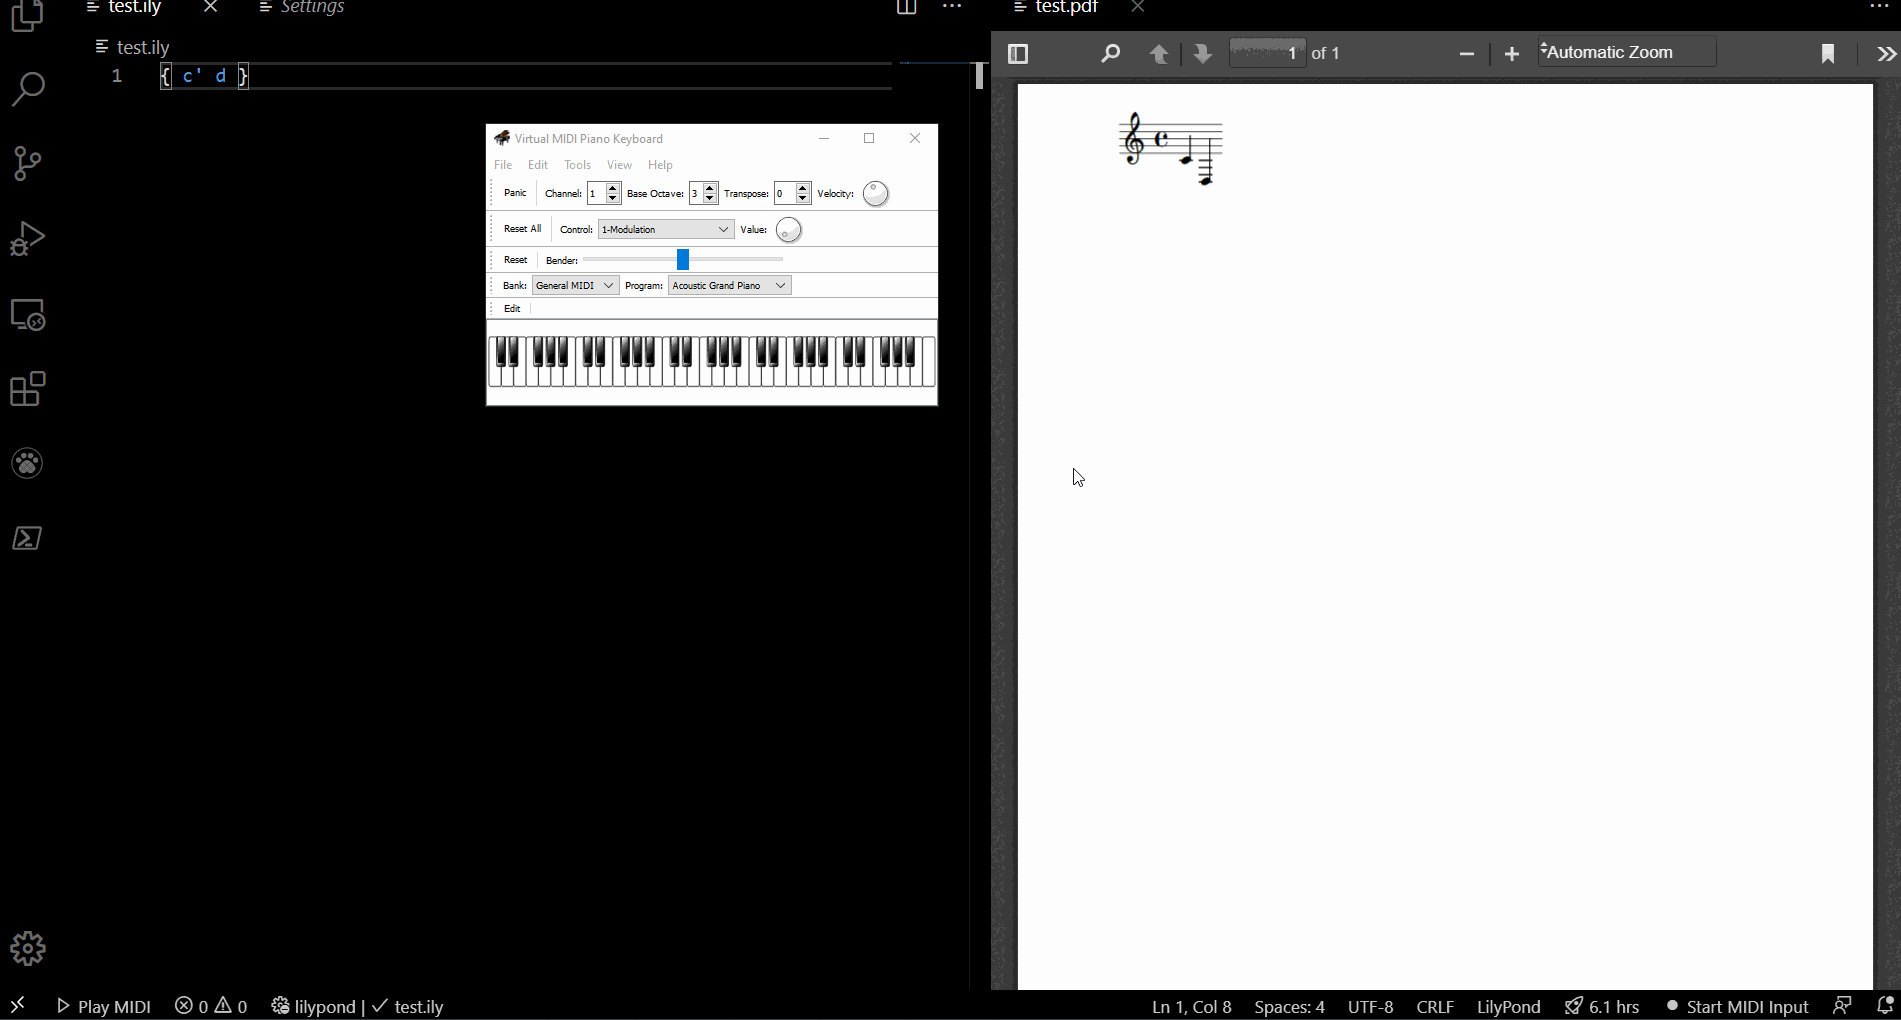 MIDI Input